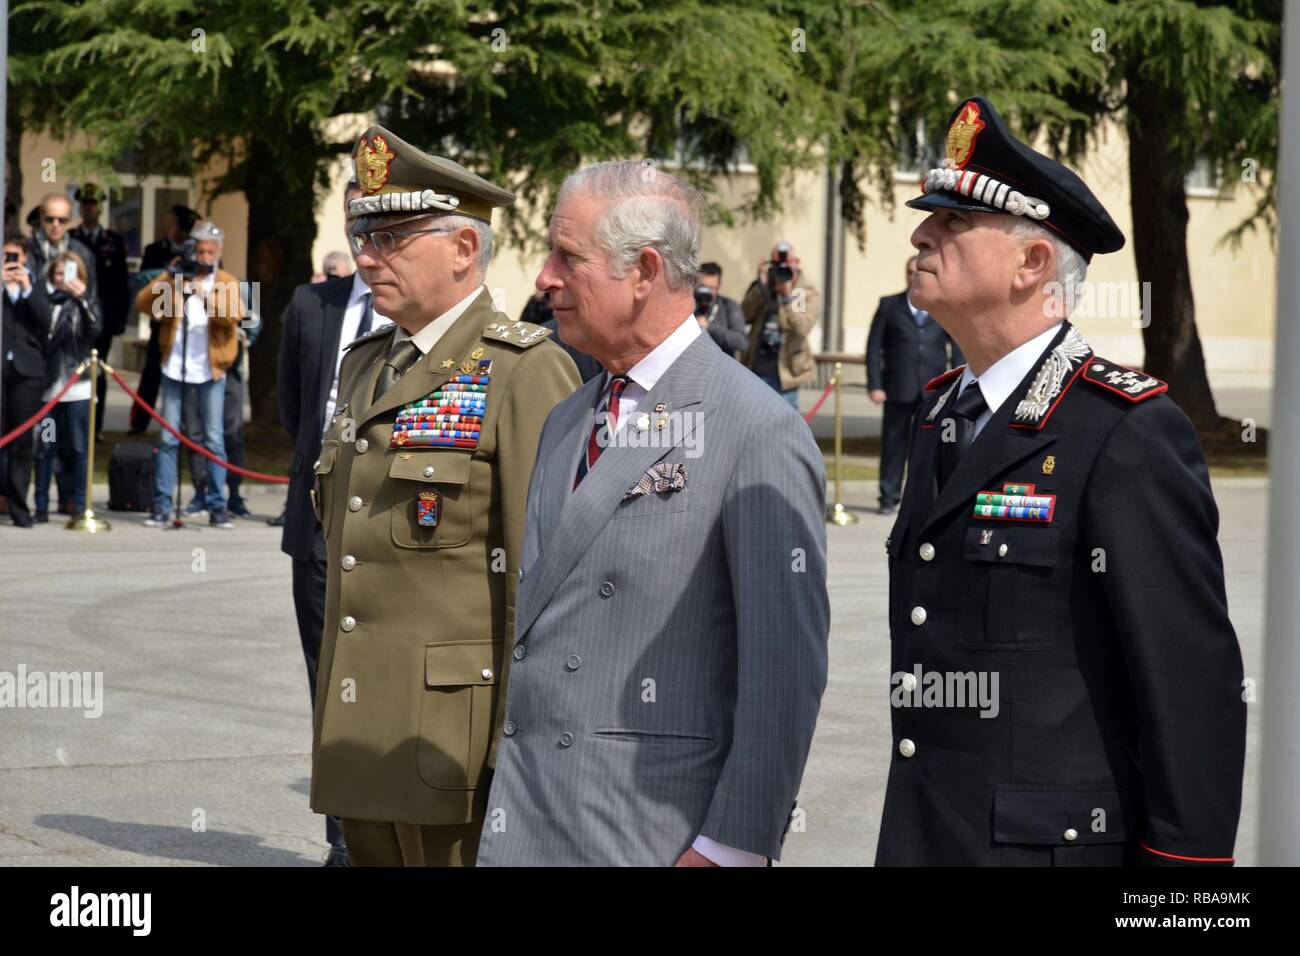 Son Altesse Royale, le Prince Charles, prince de Galles (centre), le général Claudio Graziano, chef d'état-major de l'armée italienne (à gauche) et le Général Tullio Del Sette, Commandant général des carabiniers italiens (à droite), de rendre honneur aux morts, pendant une visite au Centre d'excellence pour les unités de police de stabilité (COESPU) Vicenza, Italie, le 1 avril 2017. Banque D'Images